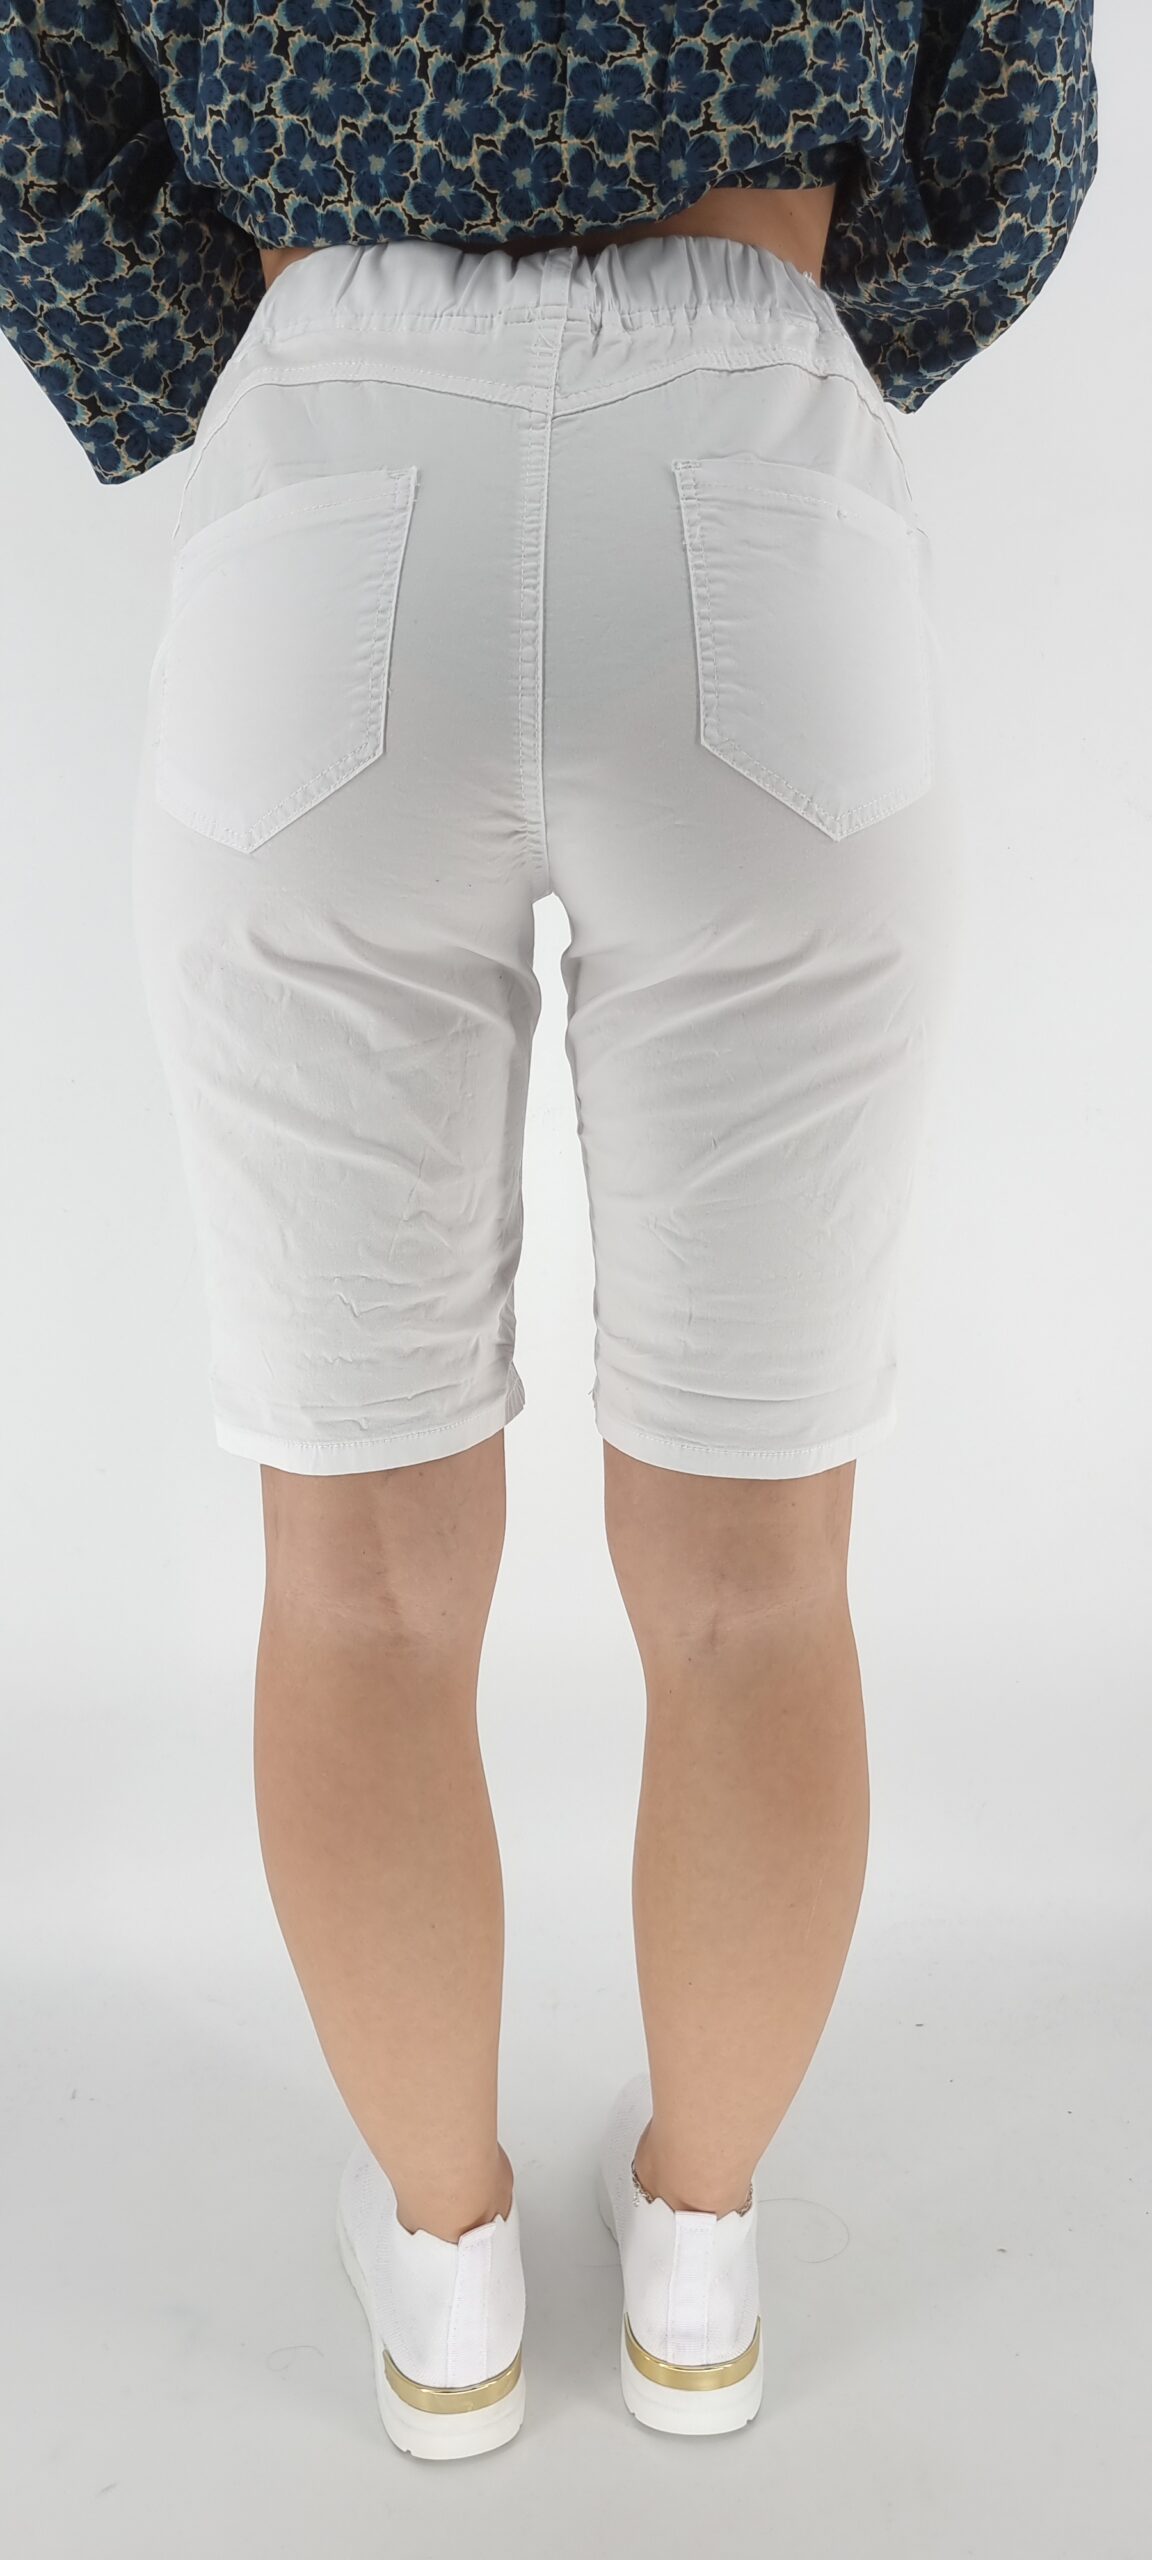 Παντελόνι βερμούδα με λάστιχο στη μέση άσπρο